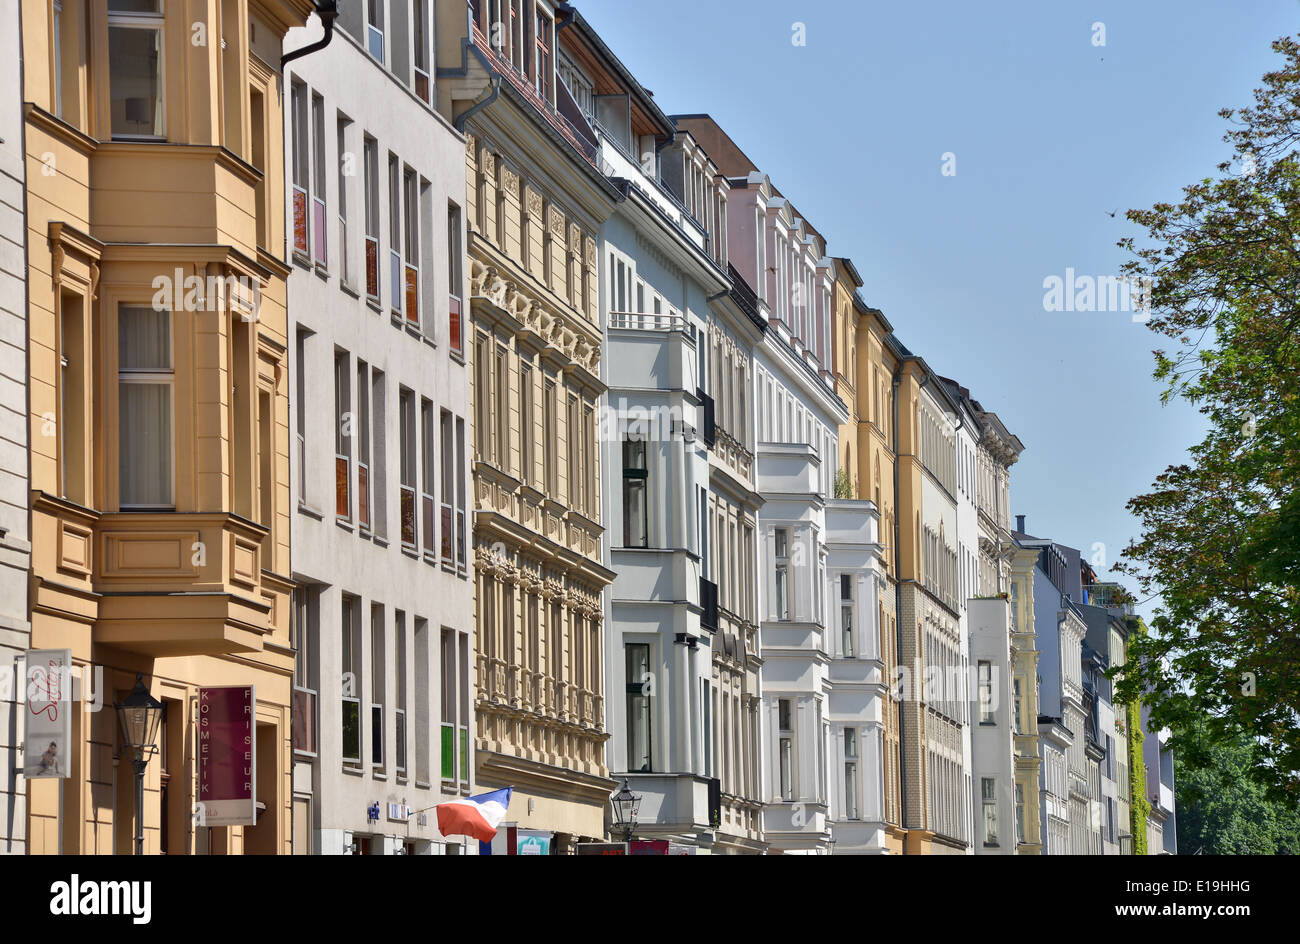 Altbauten, Fassaden, Auguststrasse, Mitte, Berlin, Deutschland Stock Photo